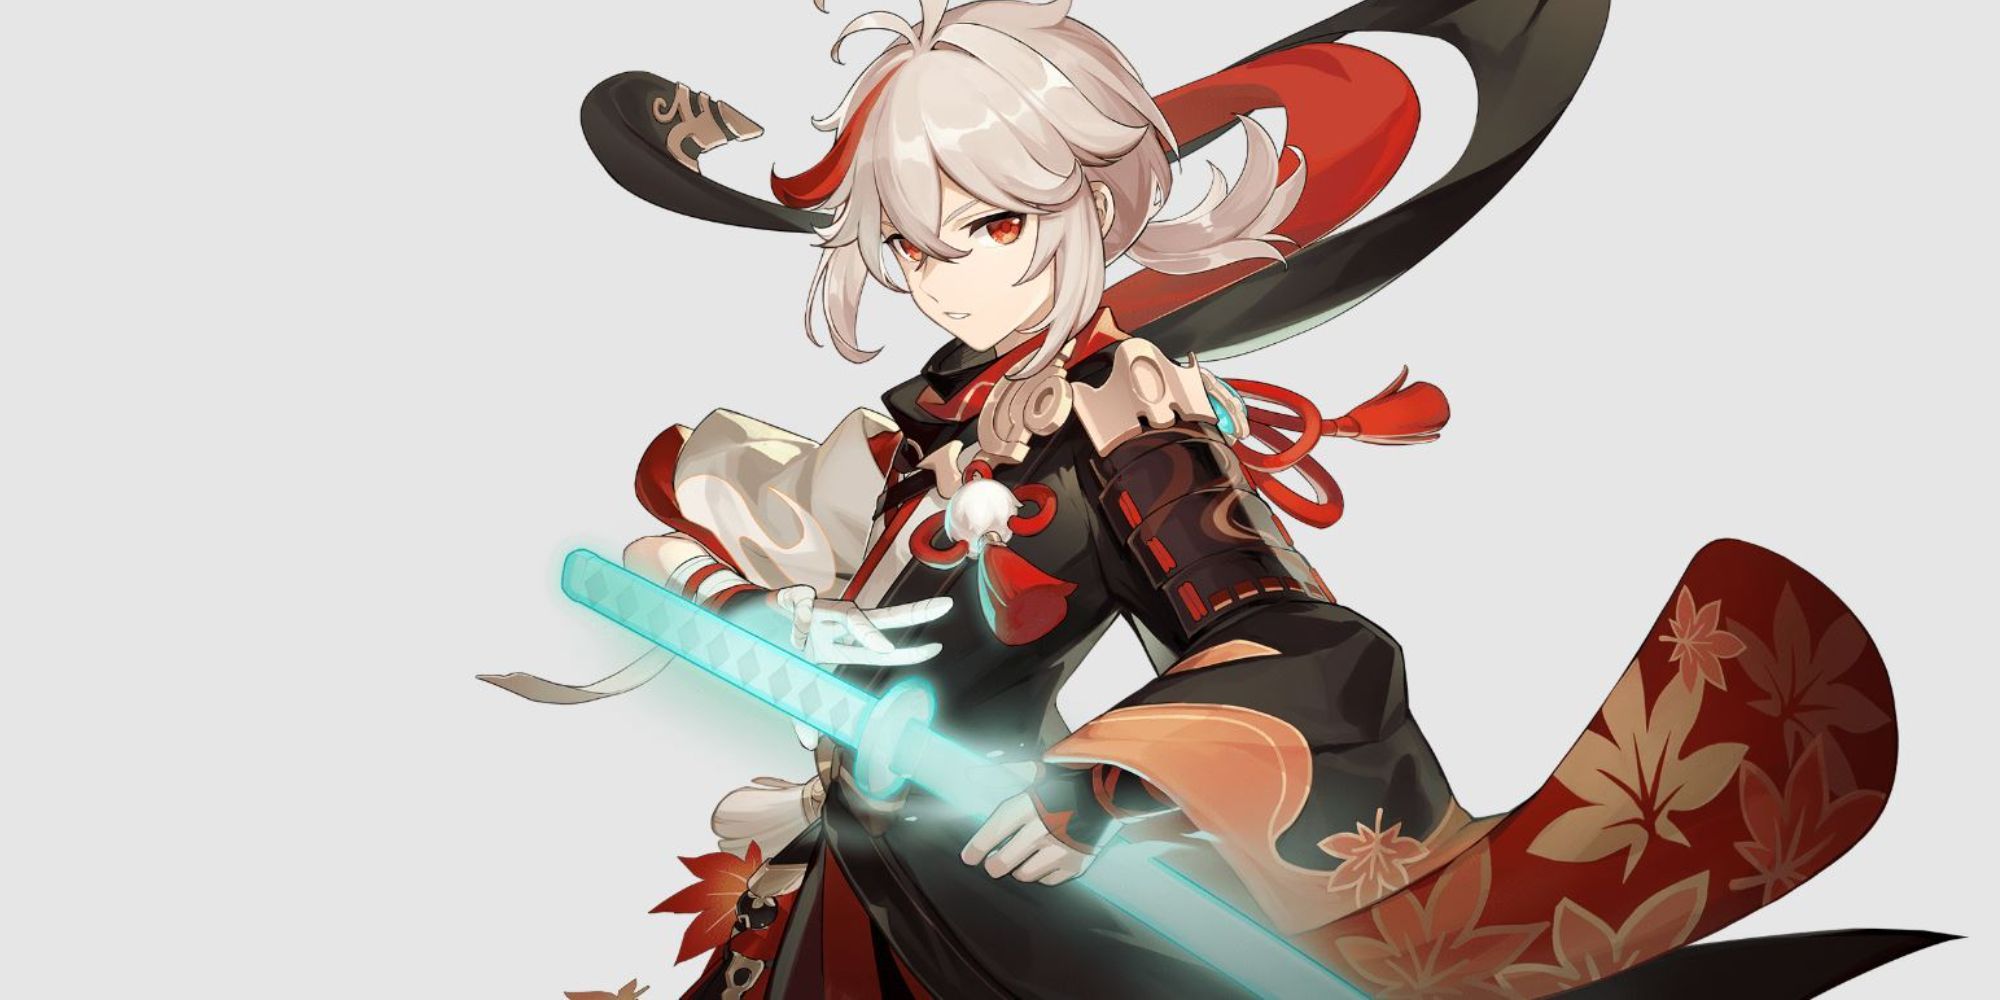 Kazuha holding weapon